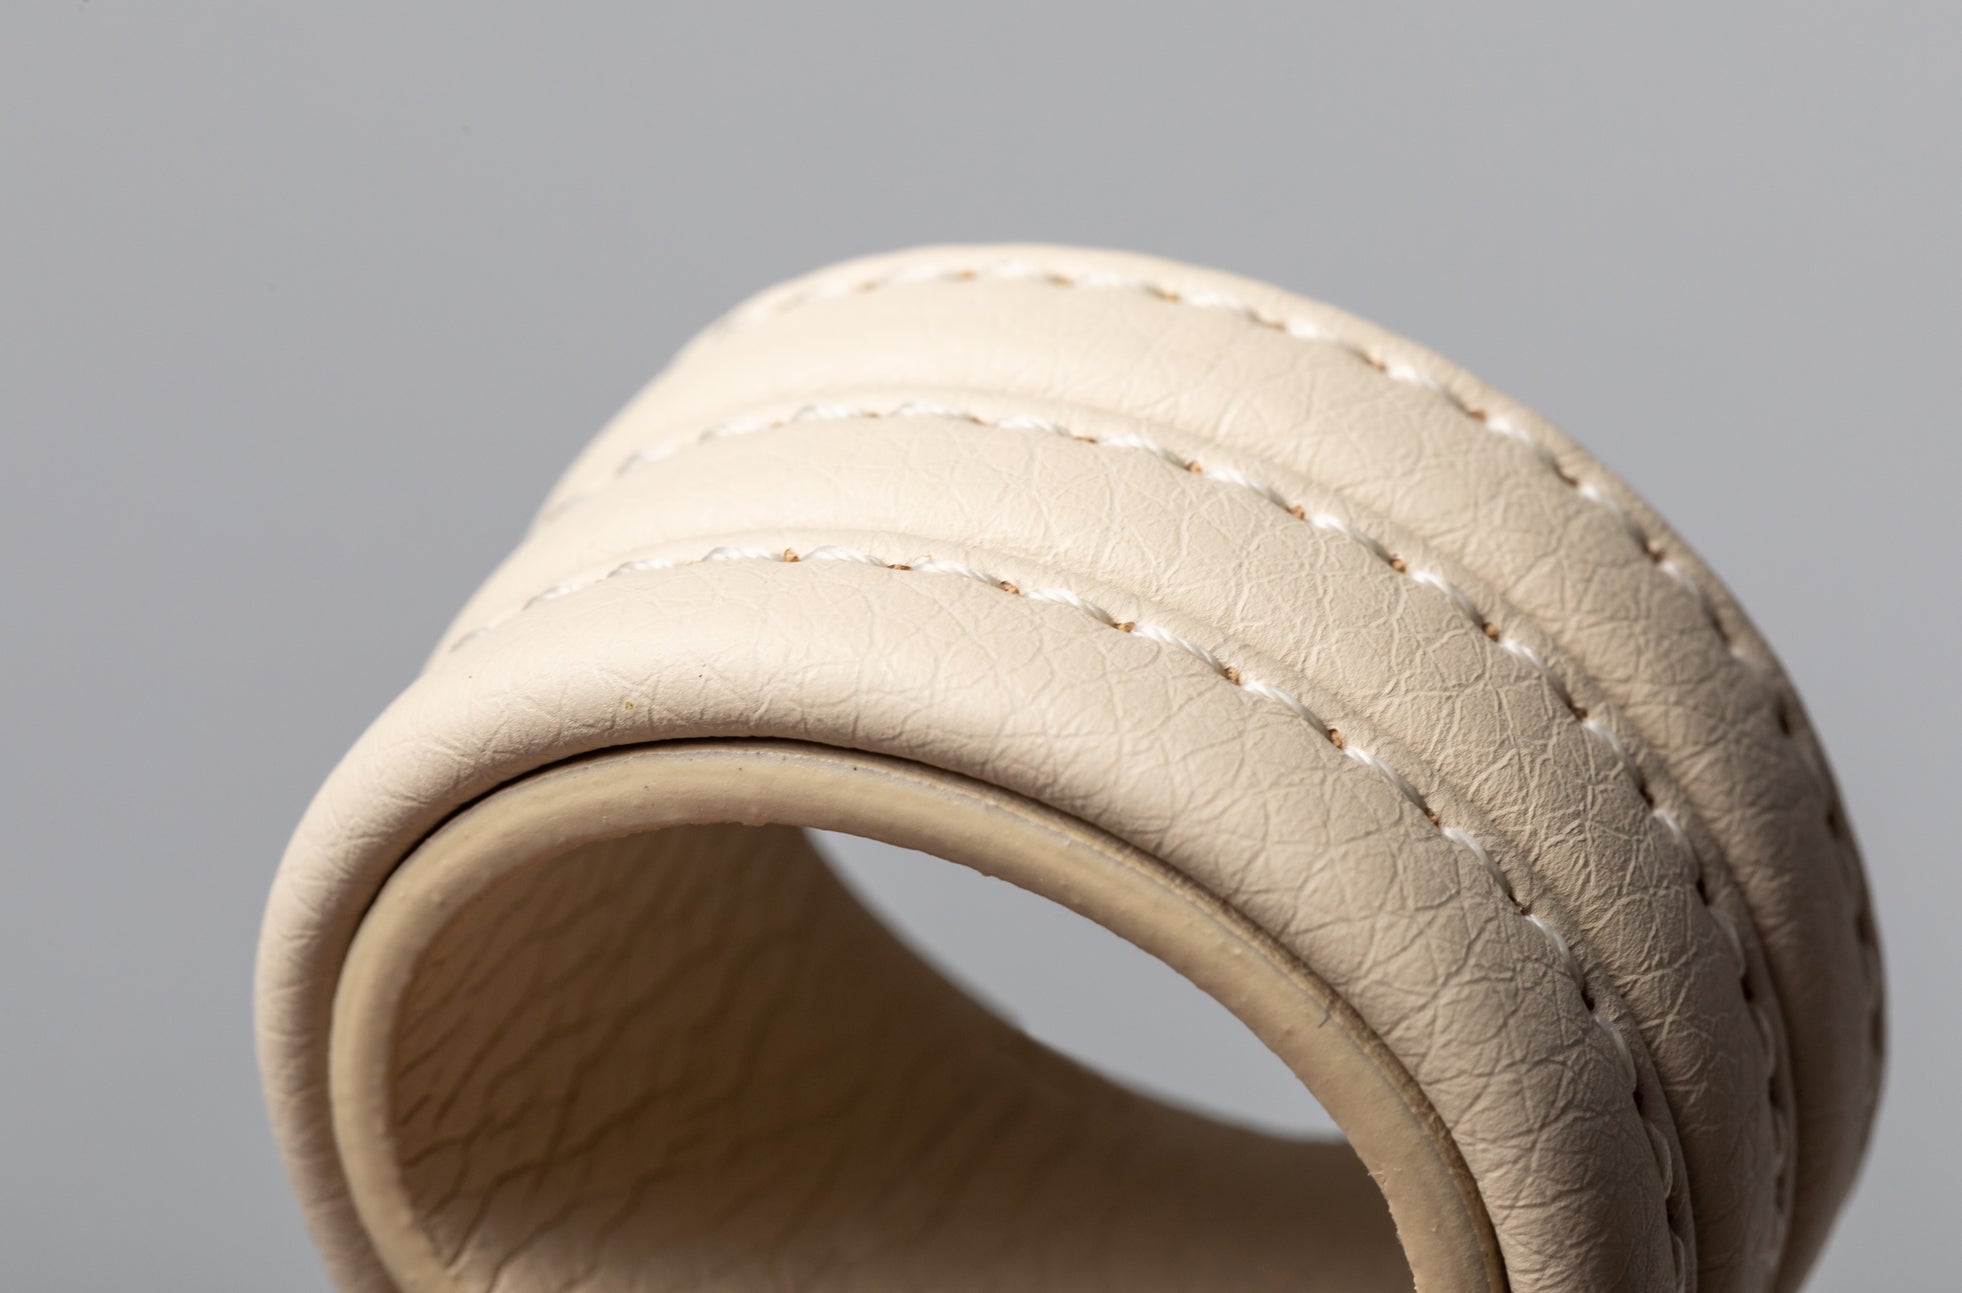 The Napkin Rings - Sample Sale in Technik-Leather in Oat image 5